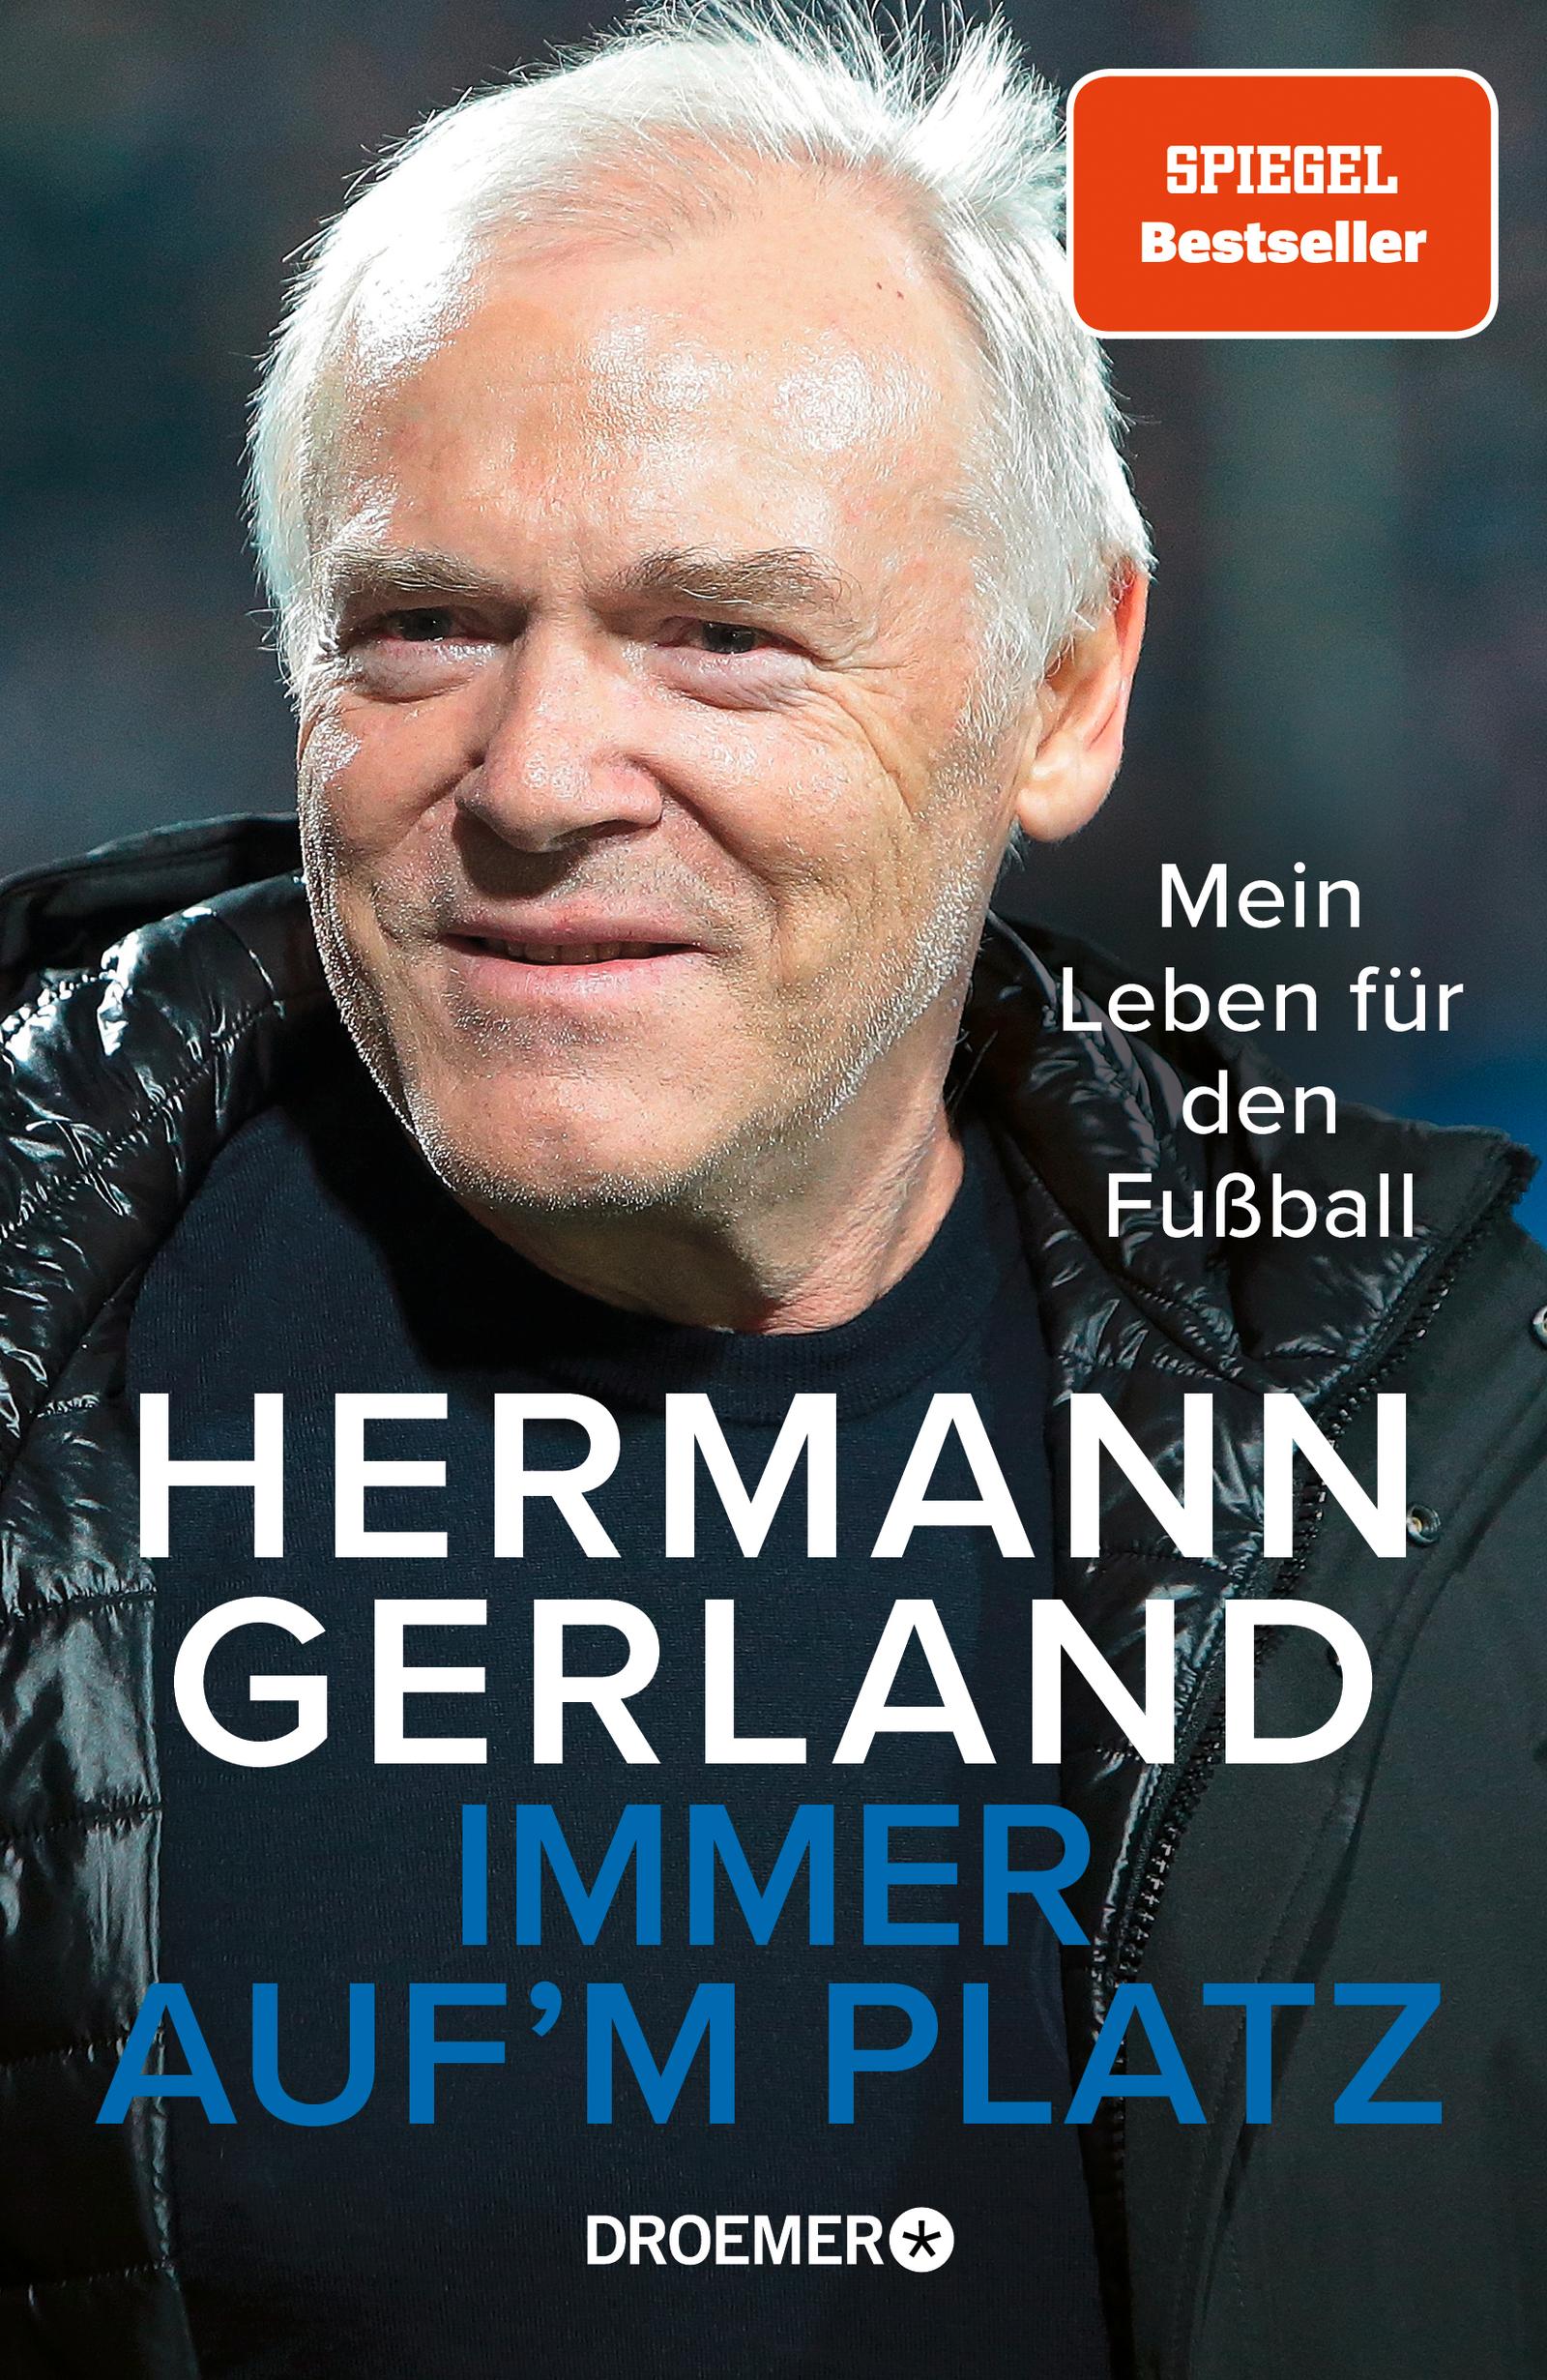 Immer auf'm Platz Mein Leben für den Fußball | Der Spiegel-Bestseller | Die Bundesliga-Legende über seine Erfahrungen als Spieler, Trainer und Mensch